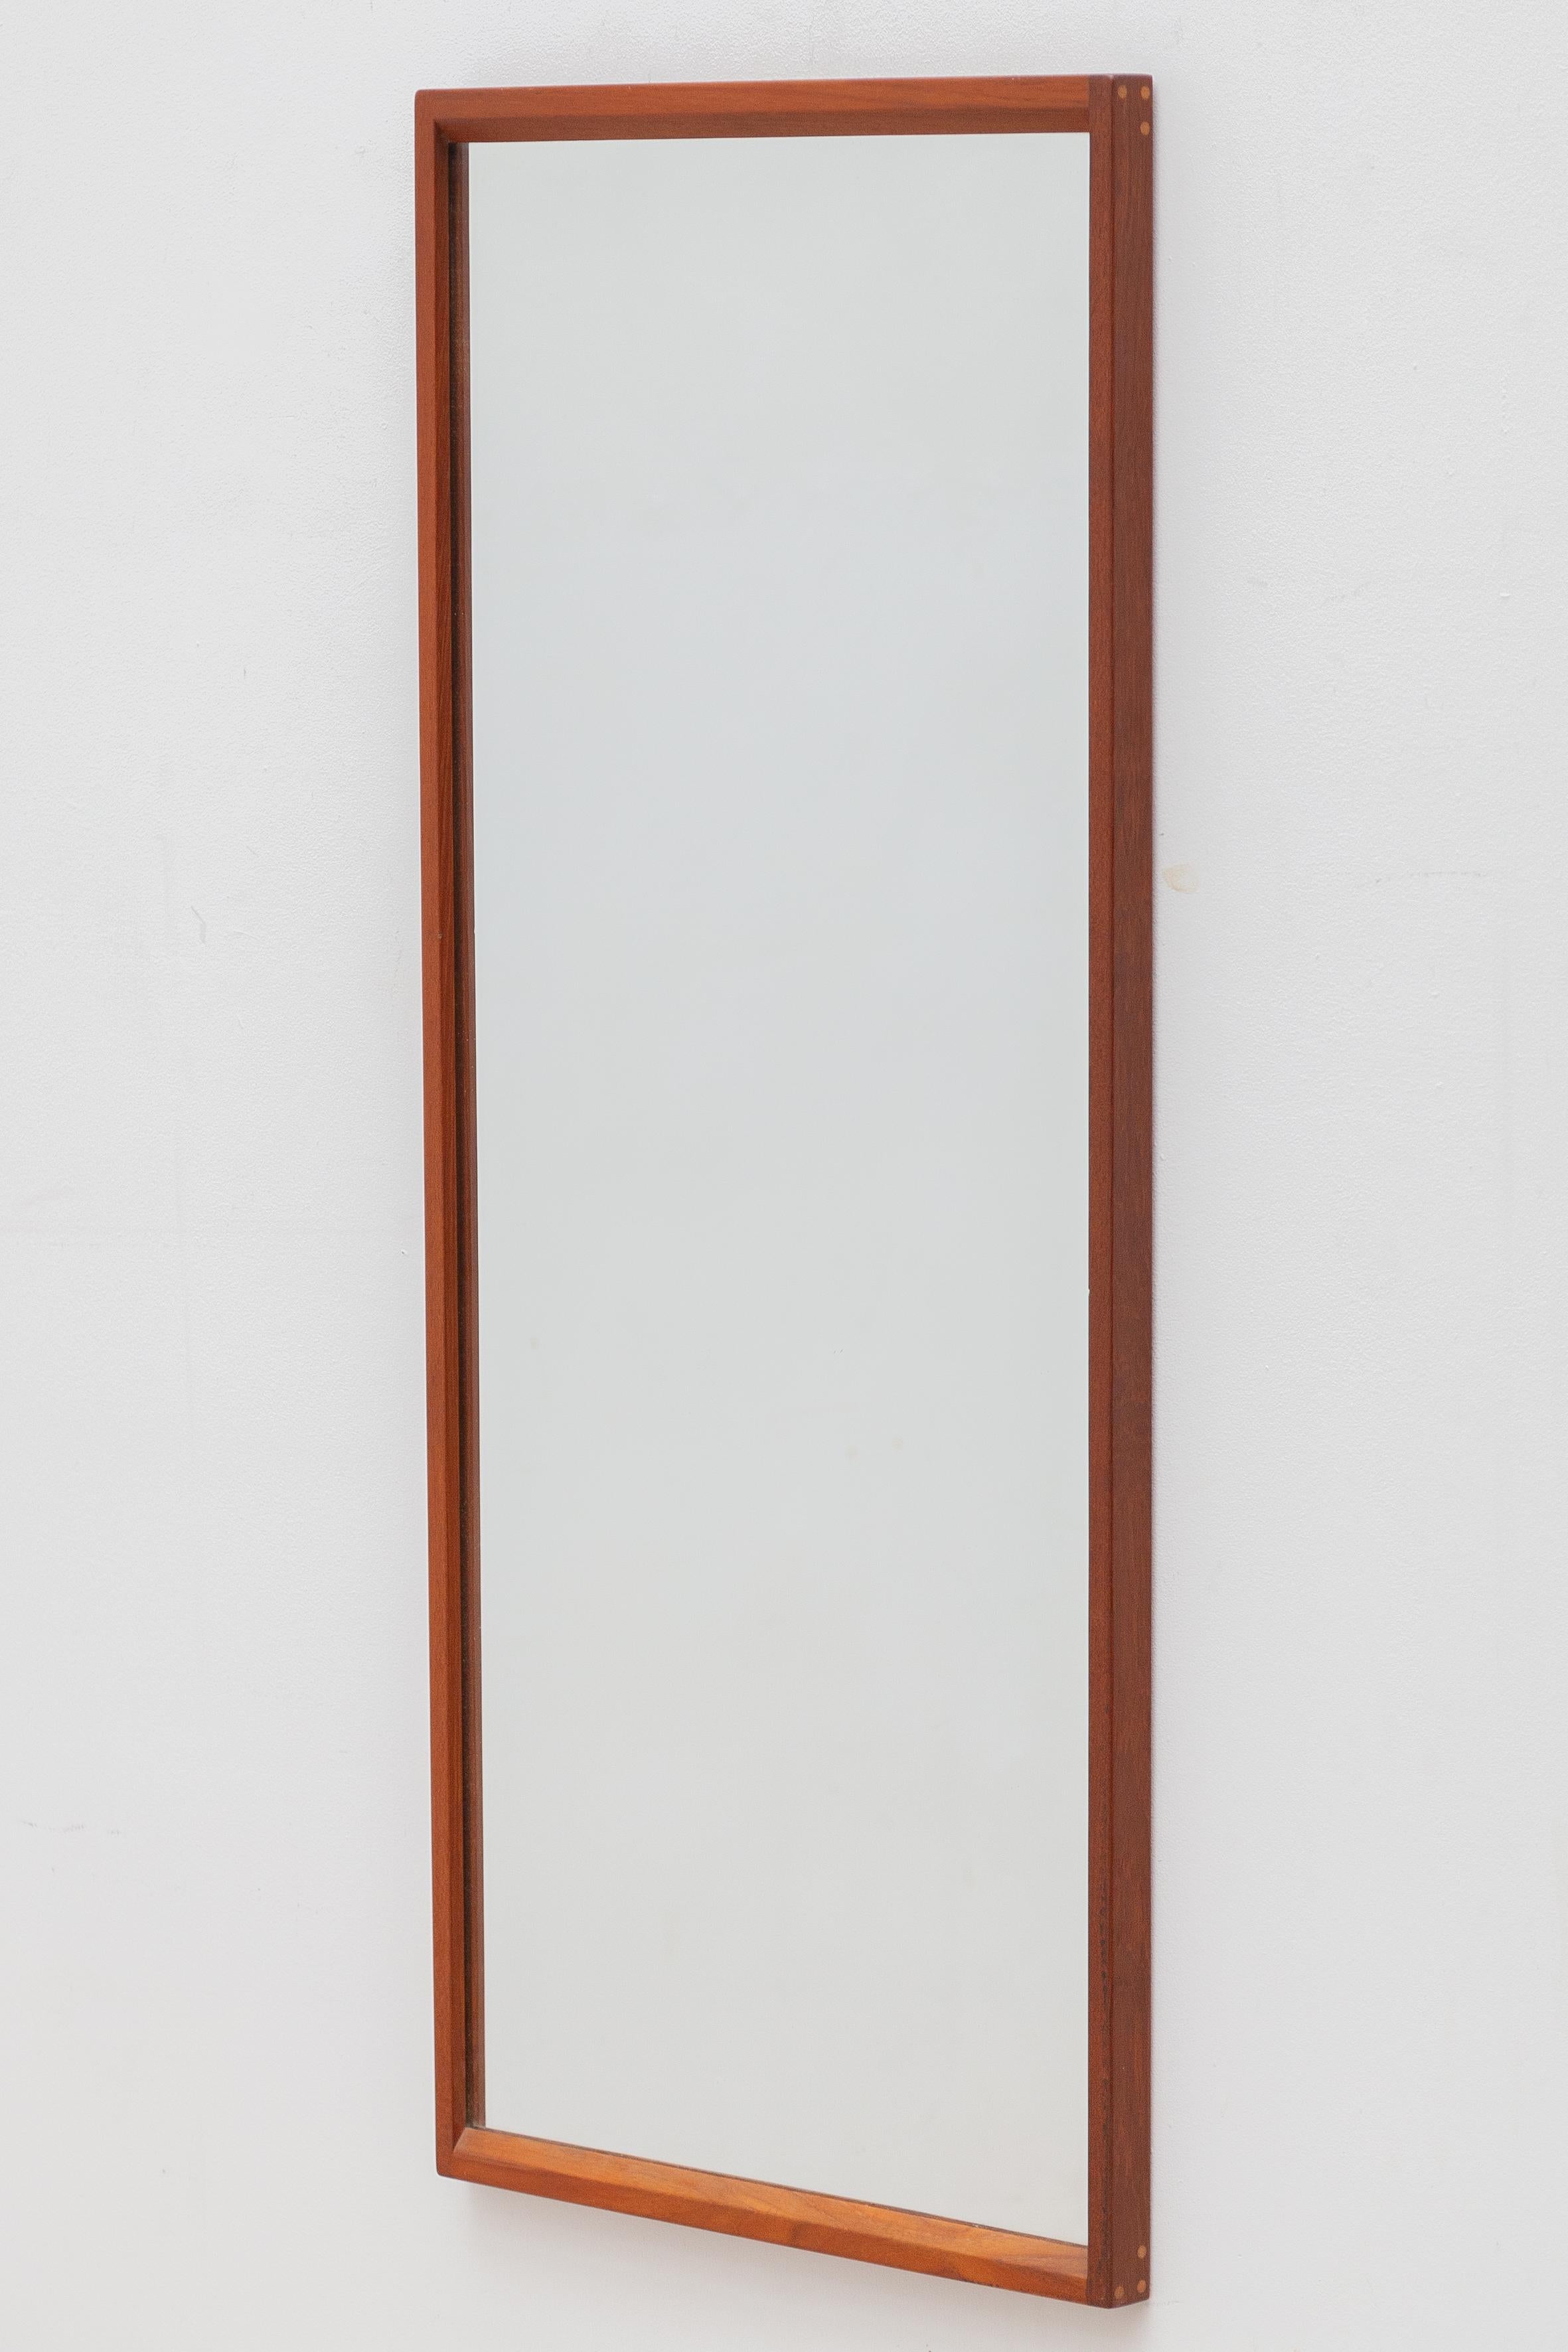 wandspiegel aus den 1960er Jahren, entworfen und hergestellt von Aksel Kjersgaard in der dänischen Gemeinde Odder. Sehr gut verarbeitetes Design, das meisterhafte Tischlertechniken und Kjersgaards charakteristische kreisförmige Einsatzdübel